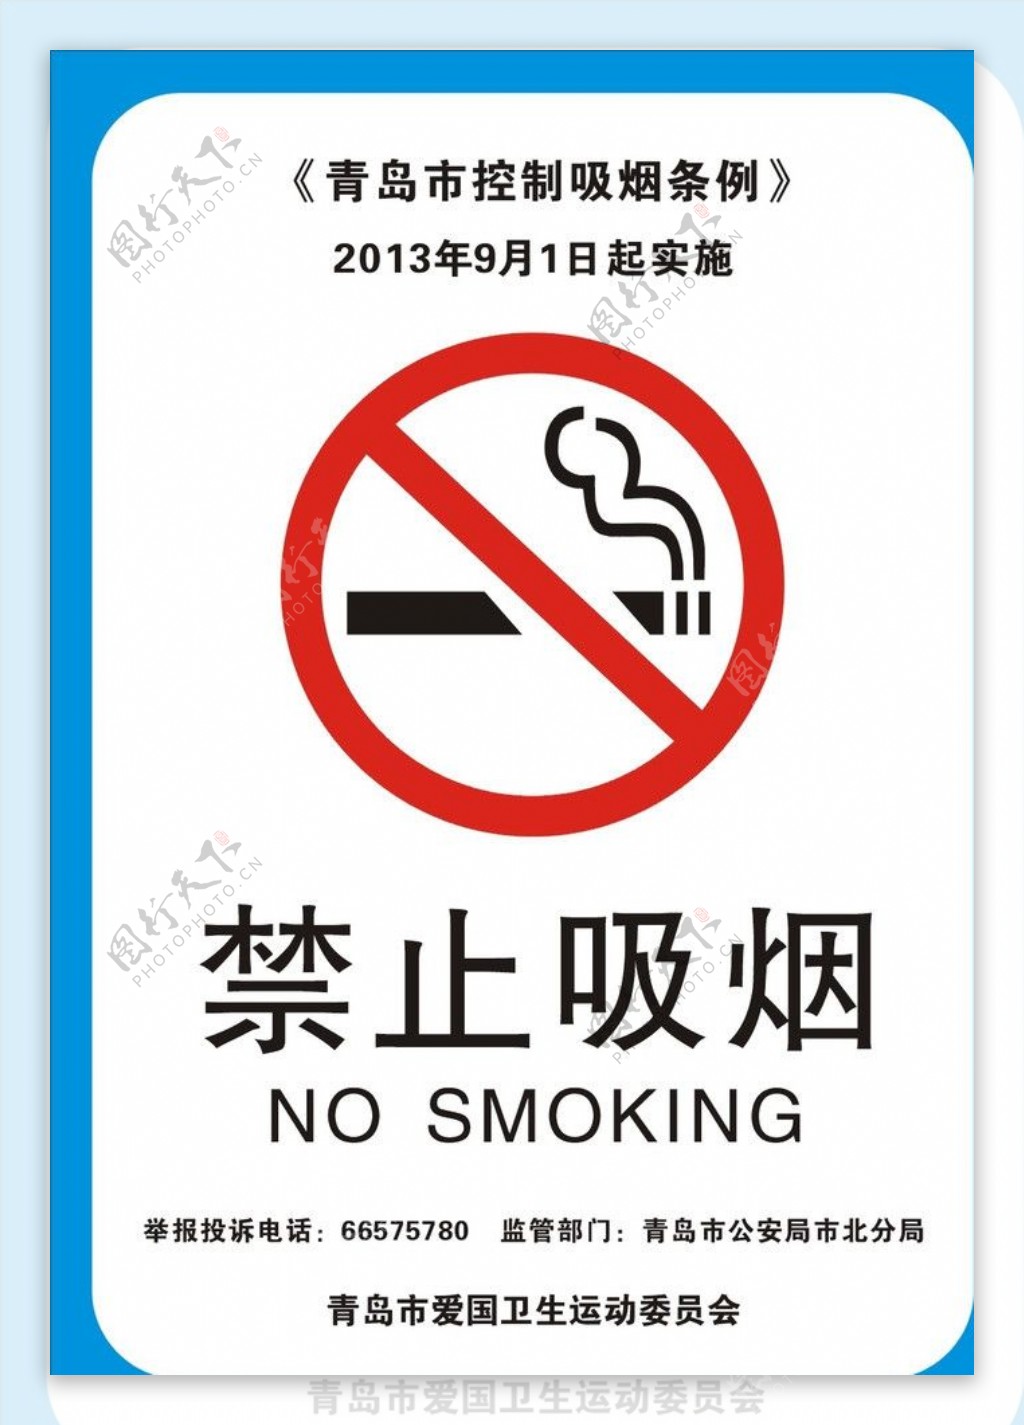 青岛市控制吸烟条例图片